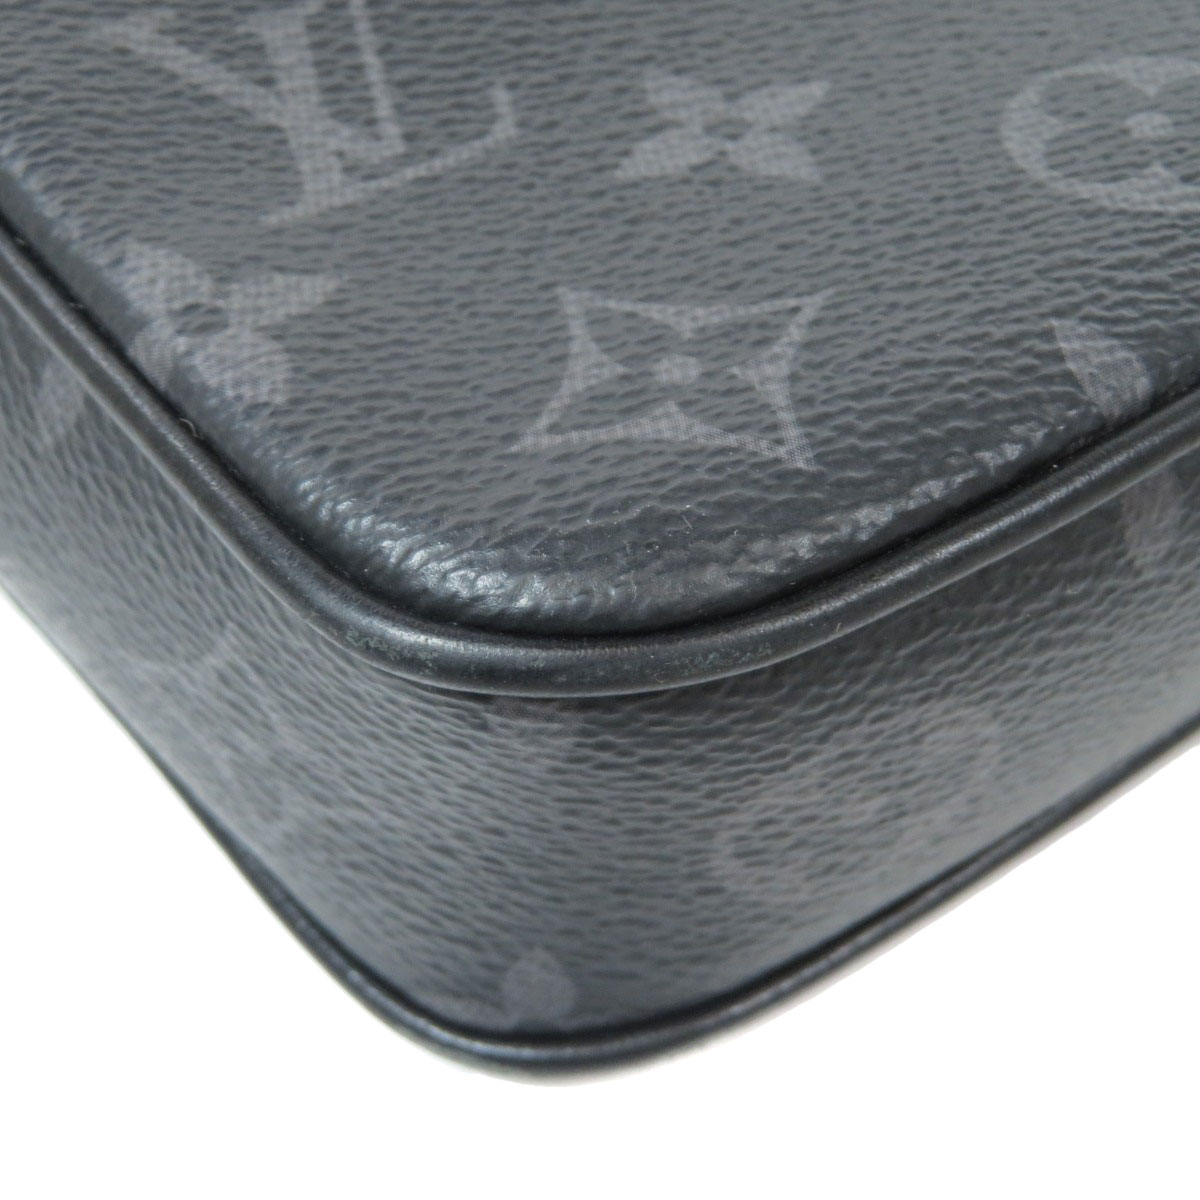 Louis Vuitton 2020 Monogram Eclipse Pochette Volga - Satchels, Bags